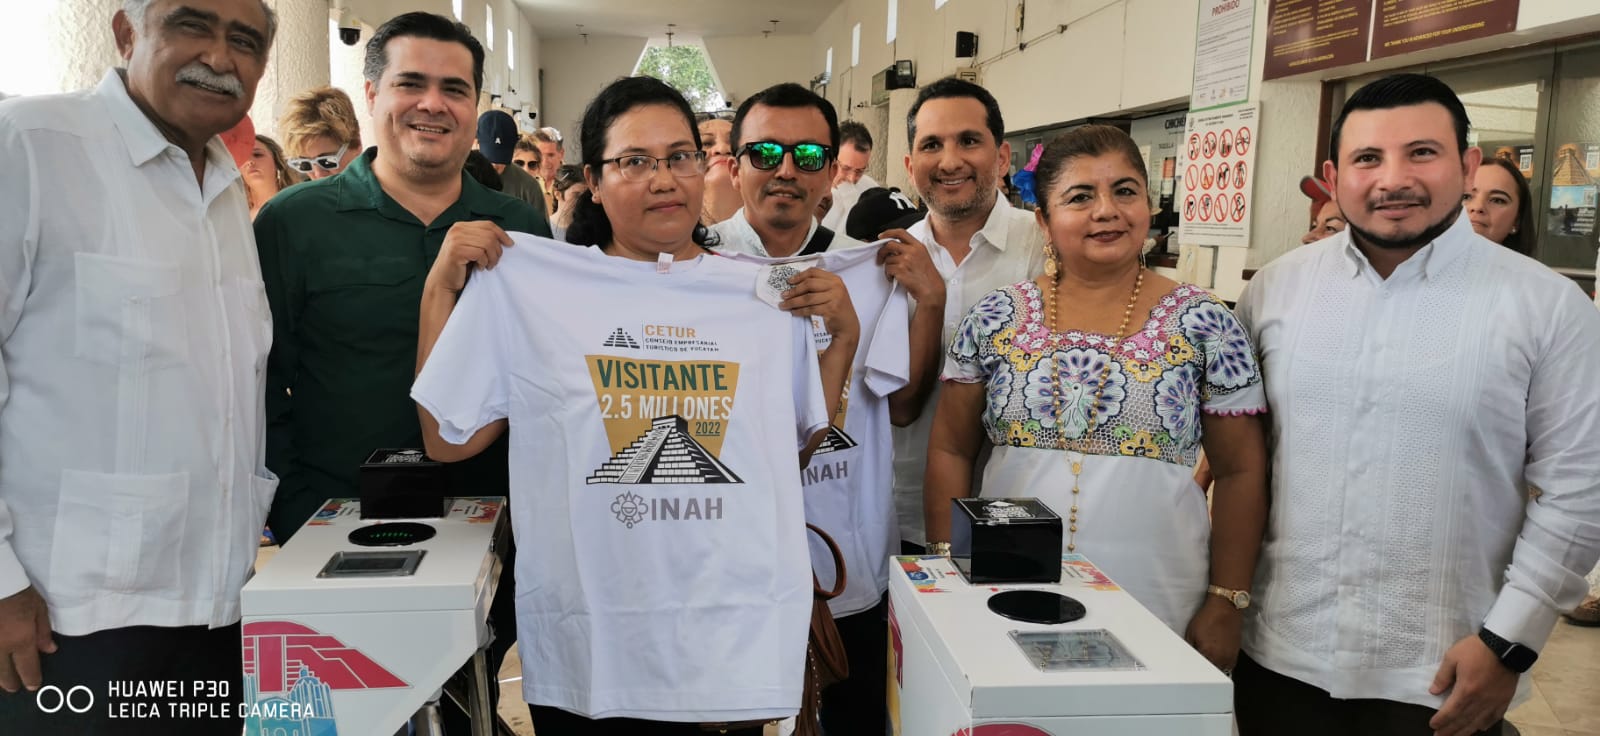 Se le entrega una camiseta y unas cortesías de hospedaje en Mérida.